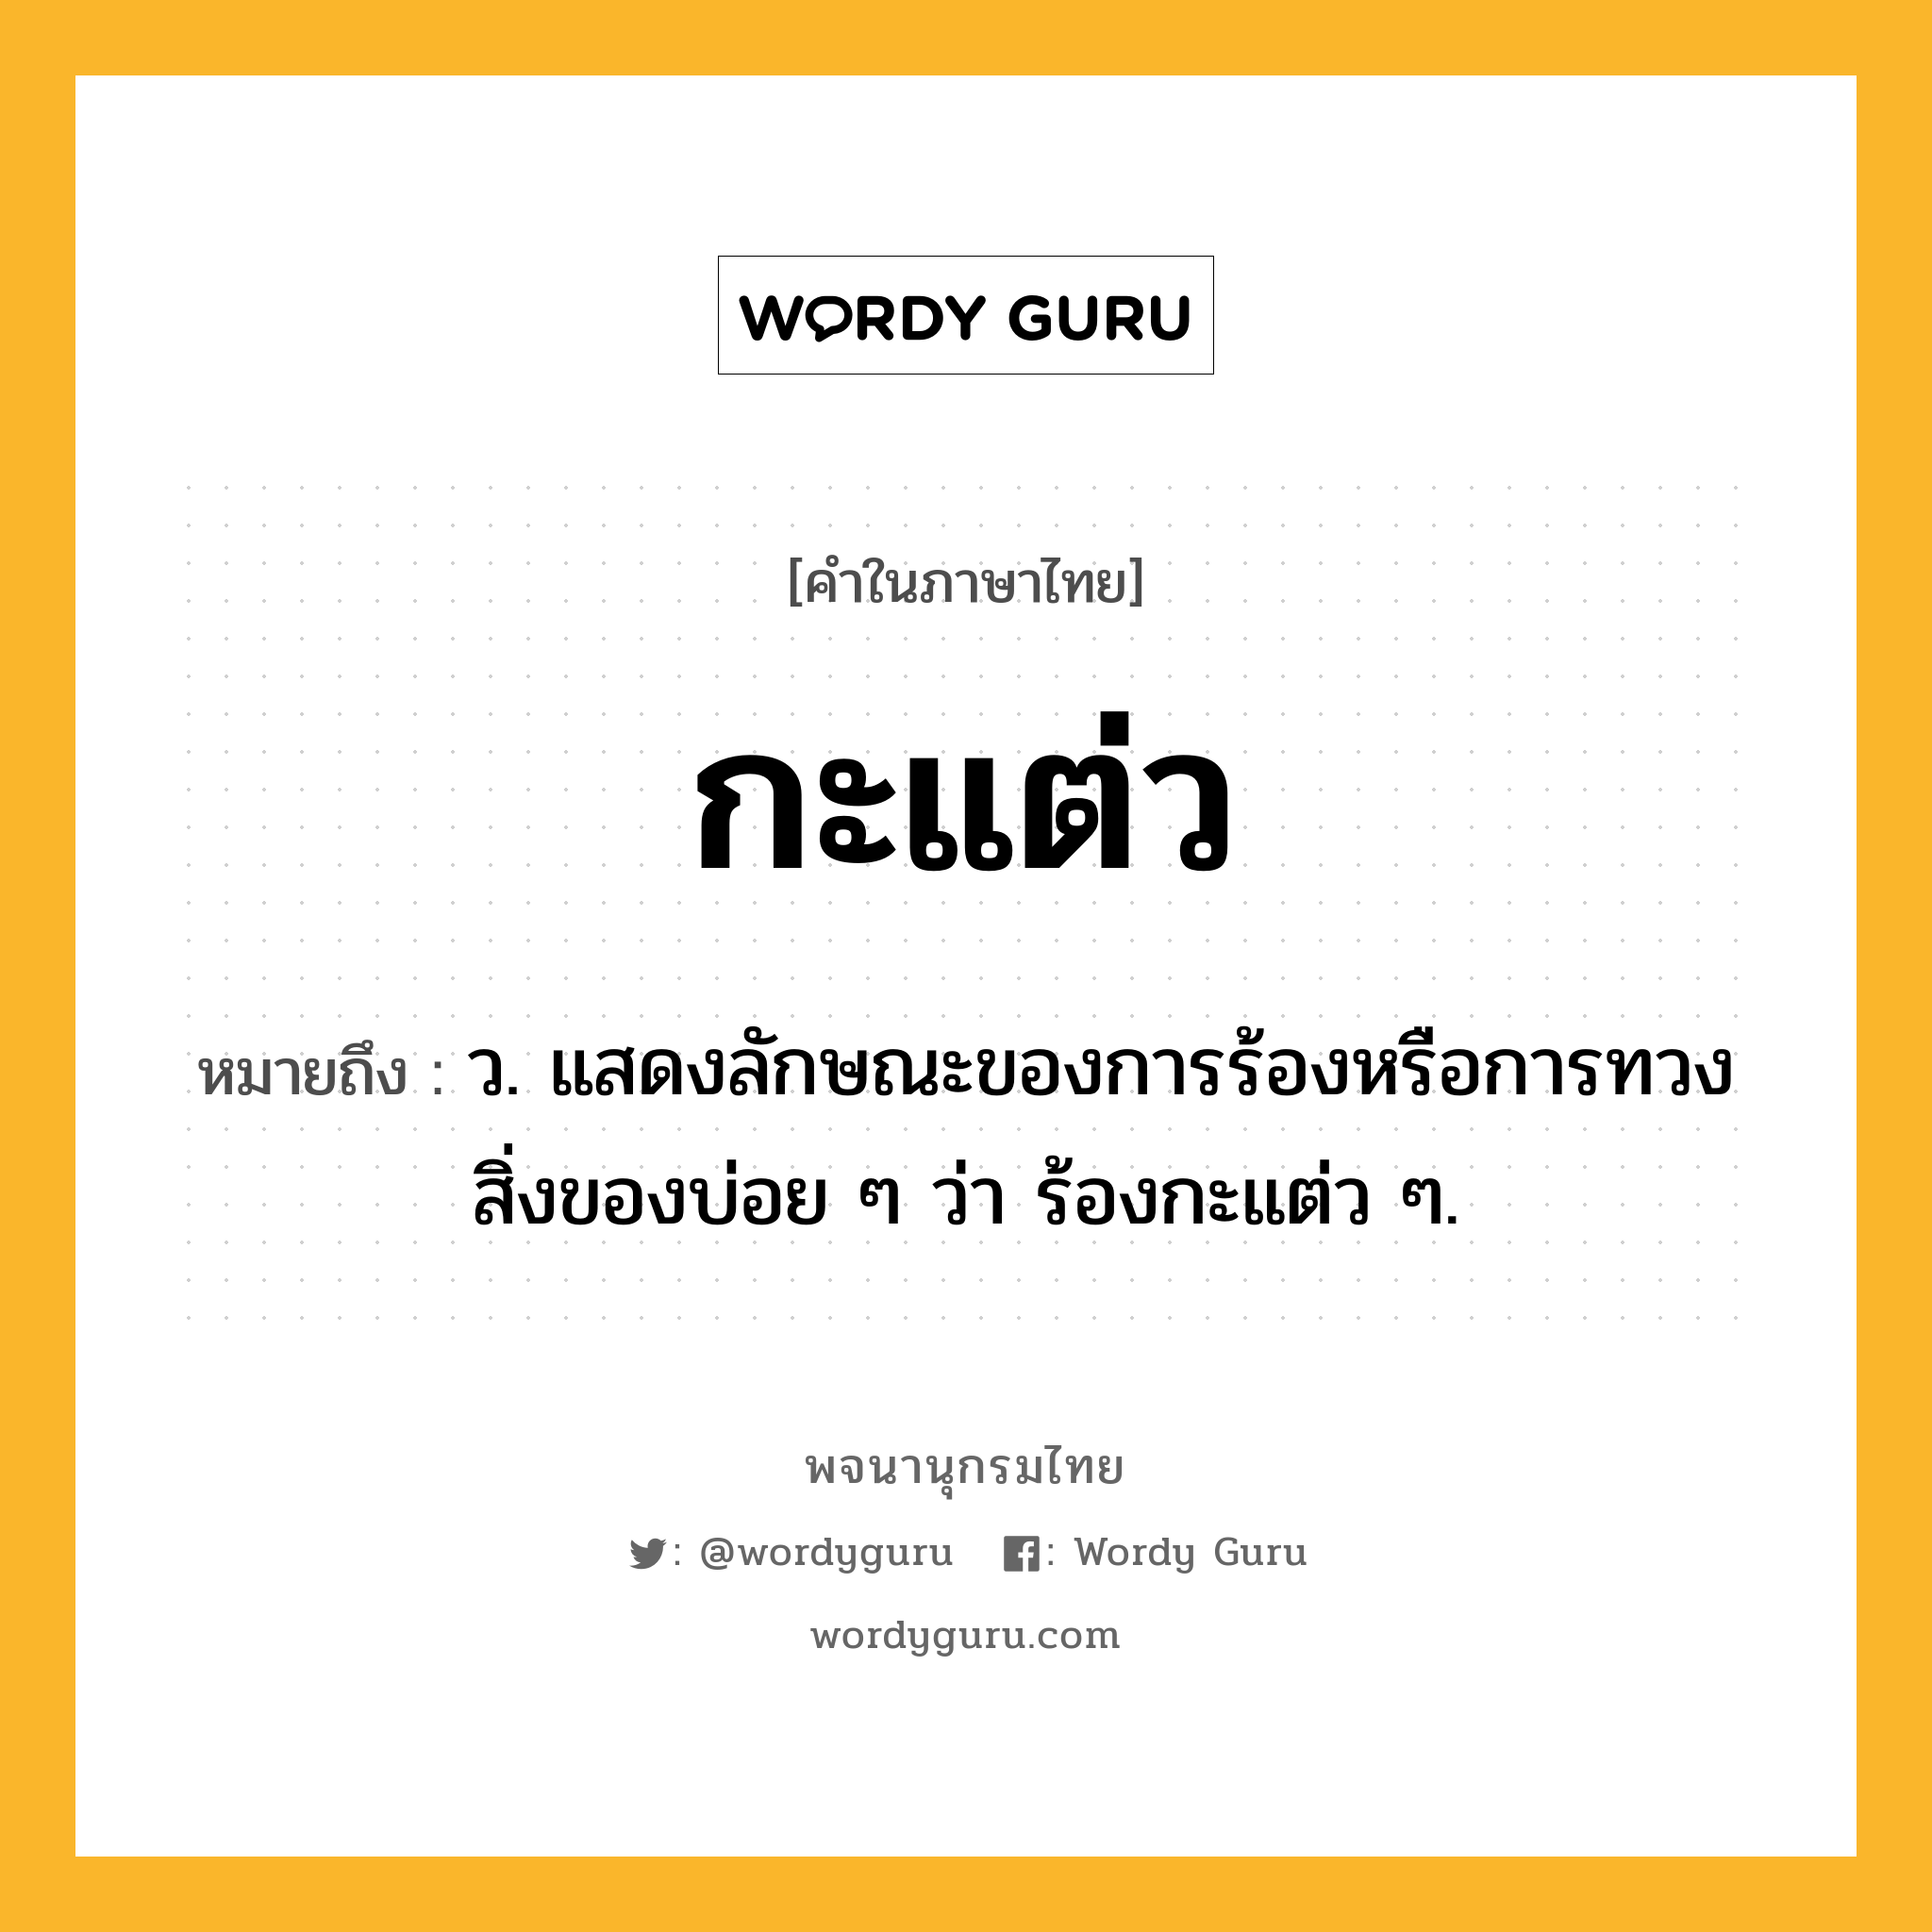 กะแต่ว หมายถึงอะไร?, คำในภาษาไทย กะแต่ว หมายถึง ว. แสดงลักษณะของการร้องหรือการทวงสิ่งของบ่อย ๆ ว่า ร้องกะแต่ว ๆ.